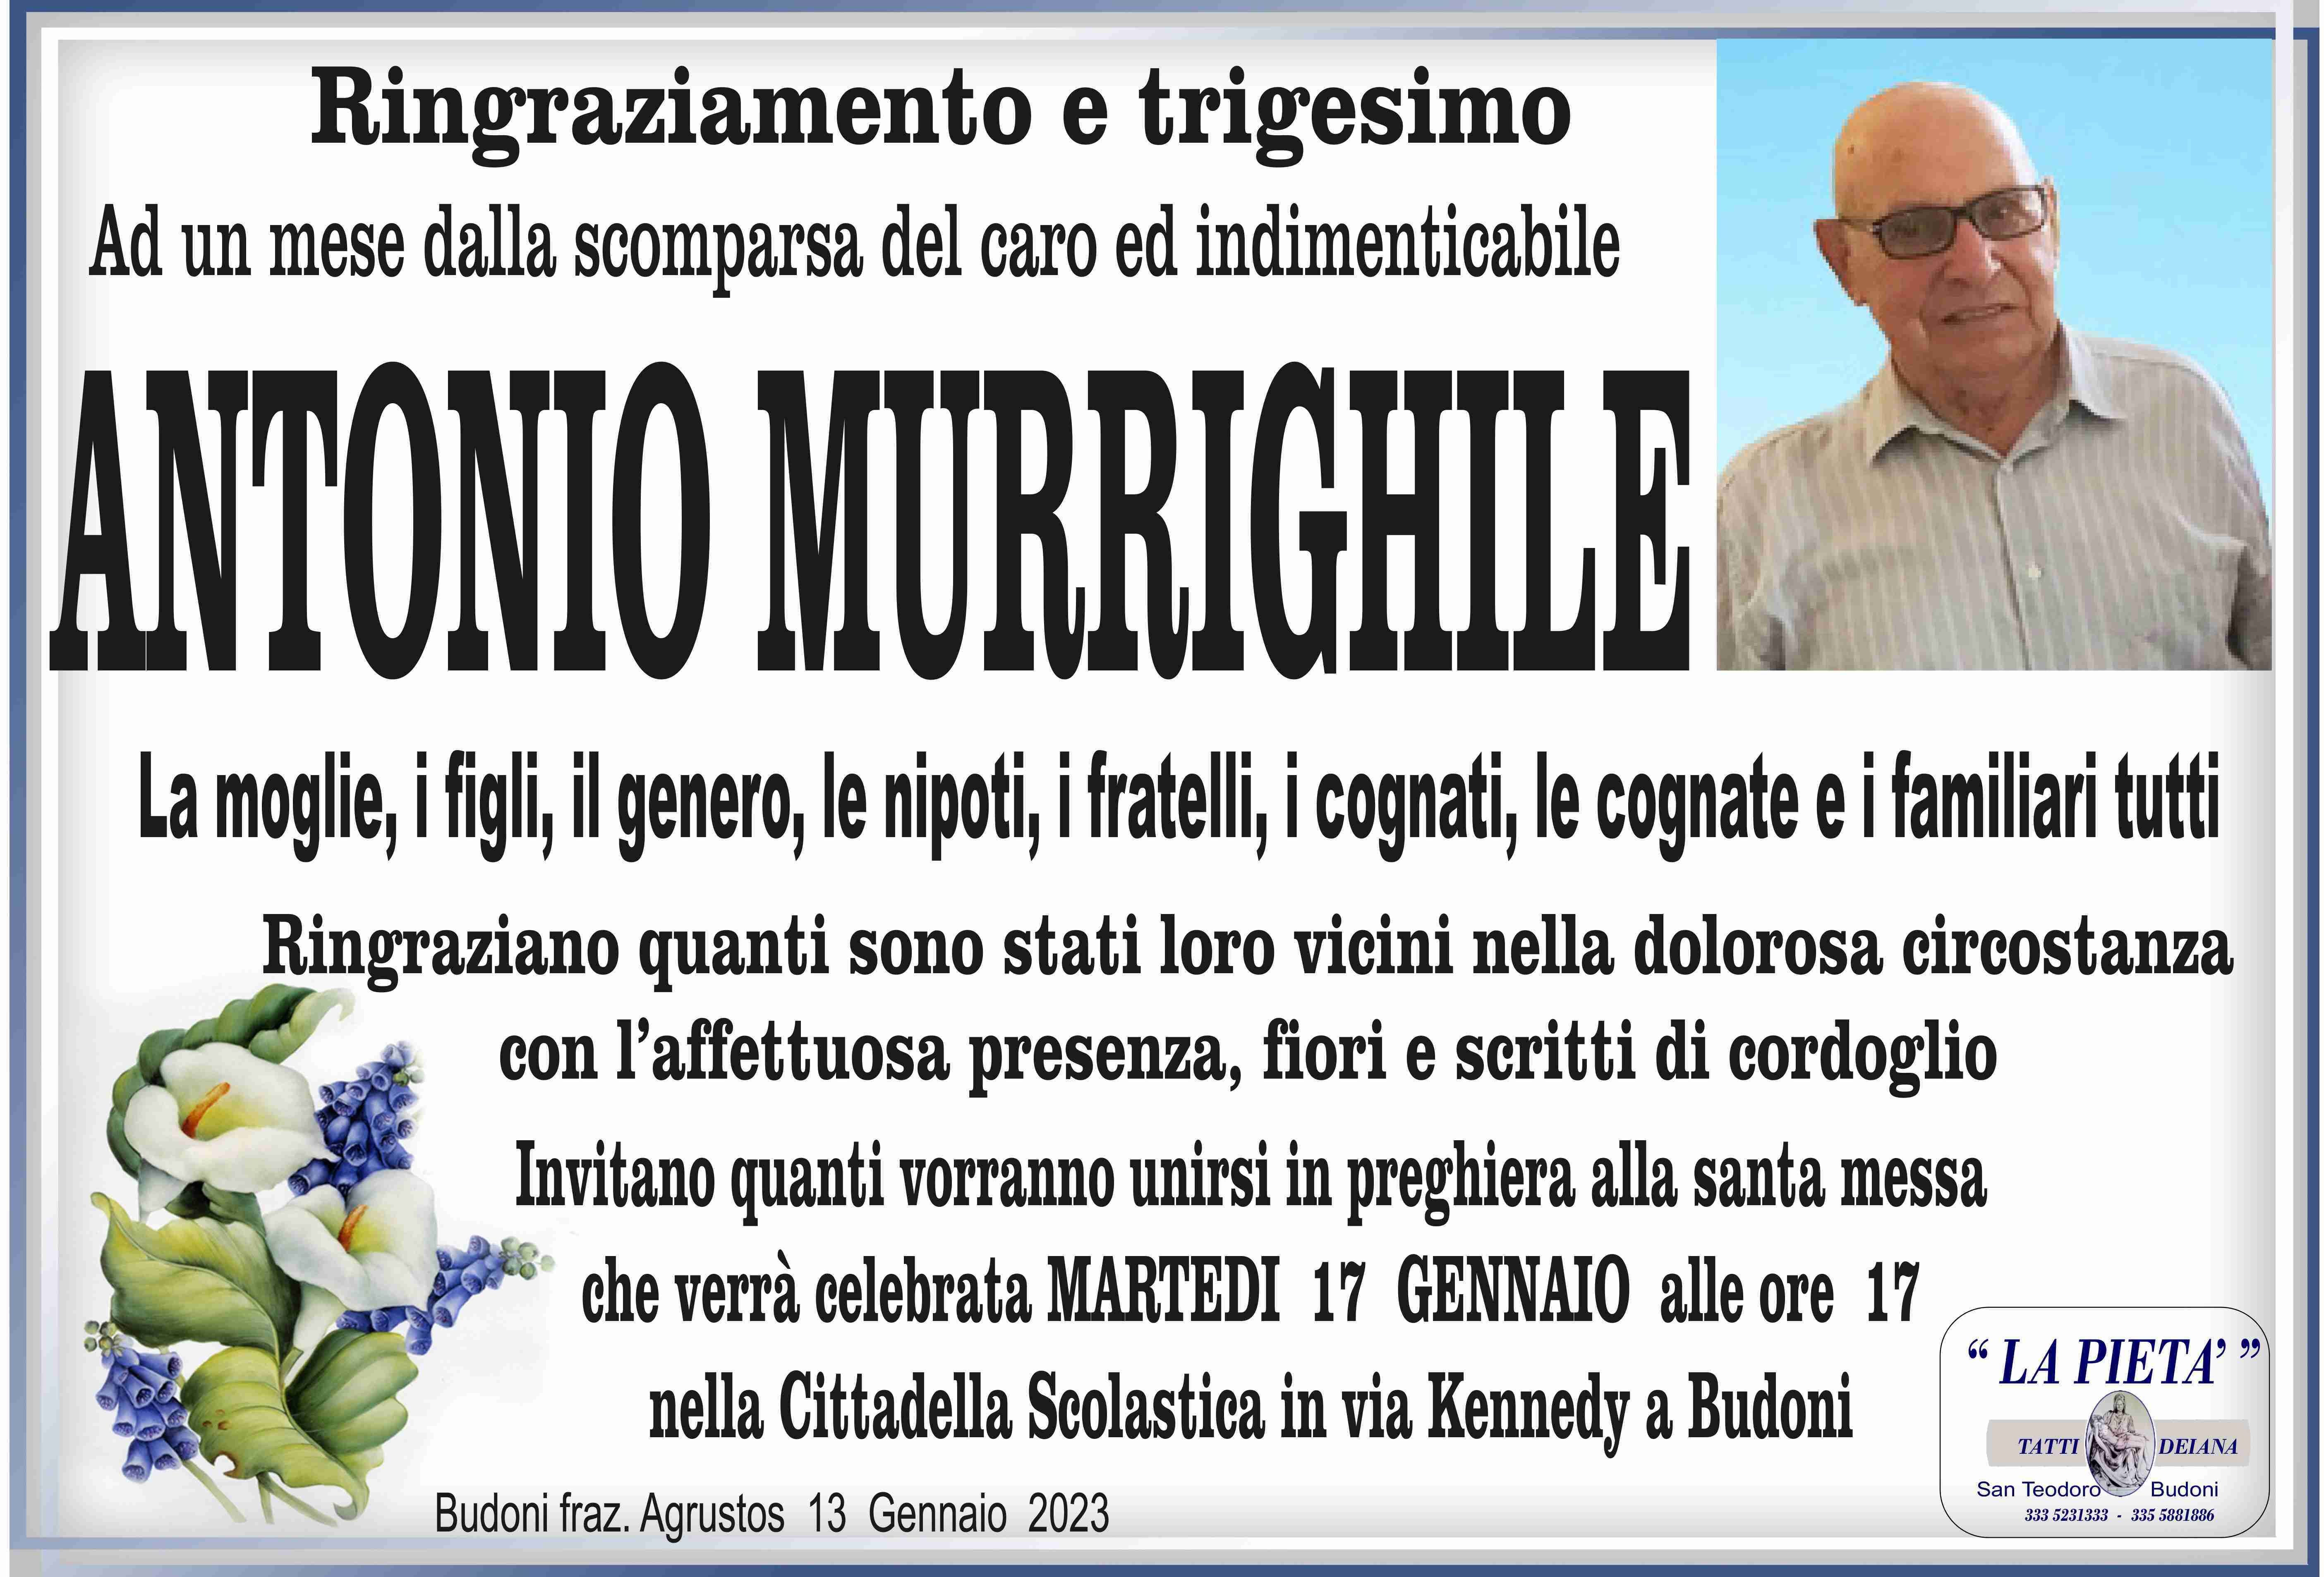 Antonio Murrighile